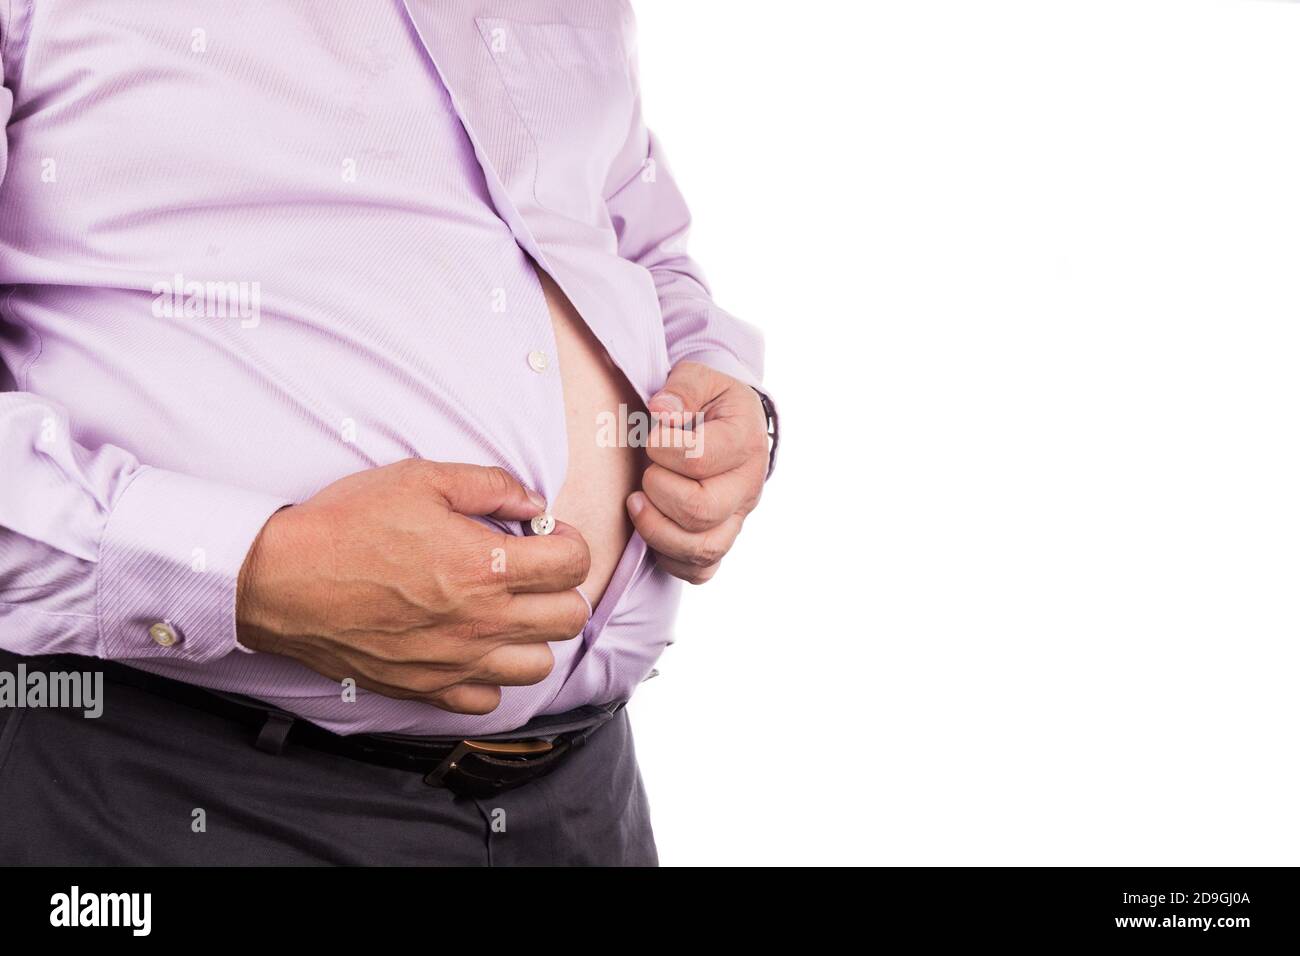 Mann mit ungesunden großen Bauch entknopf enge Hemd zu Erleichterung  Stockfotografie - Alamy